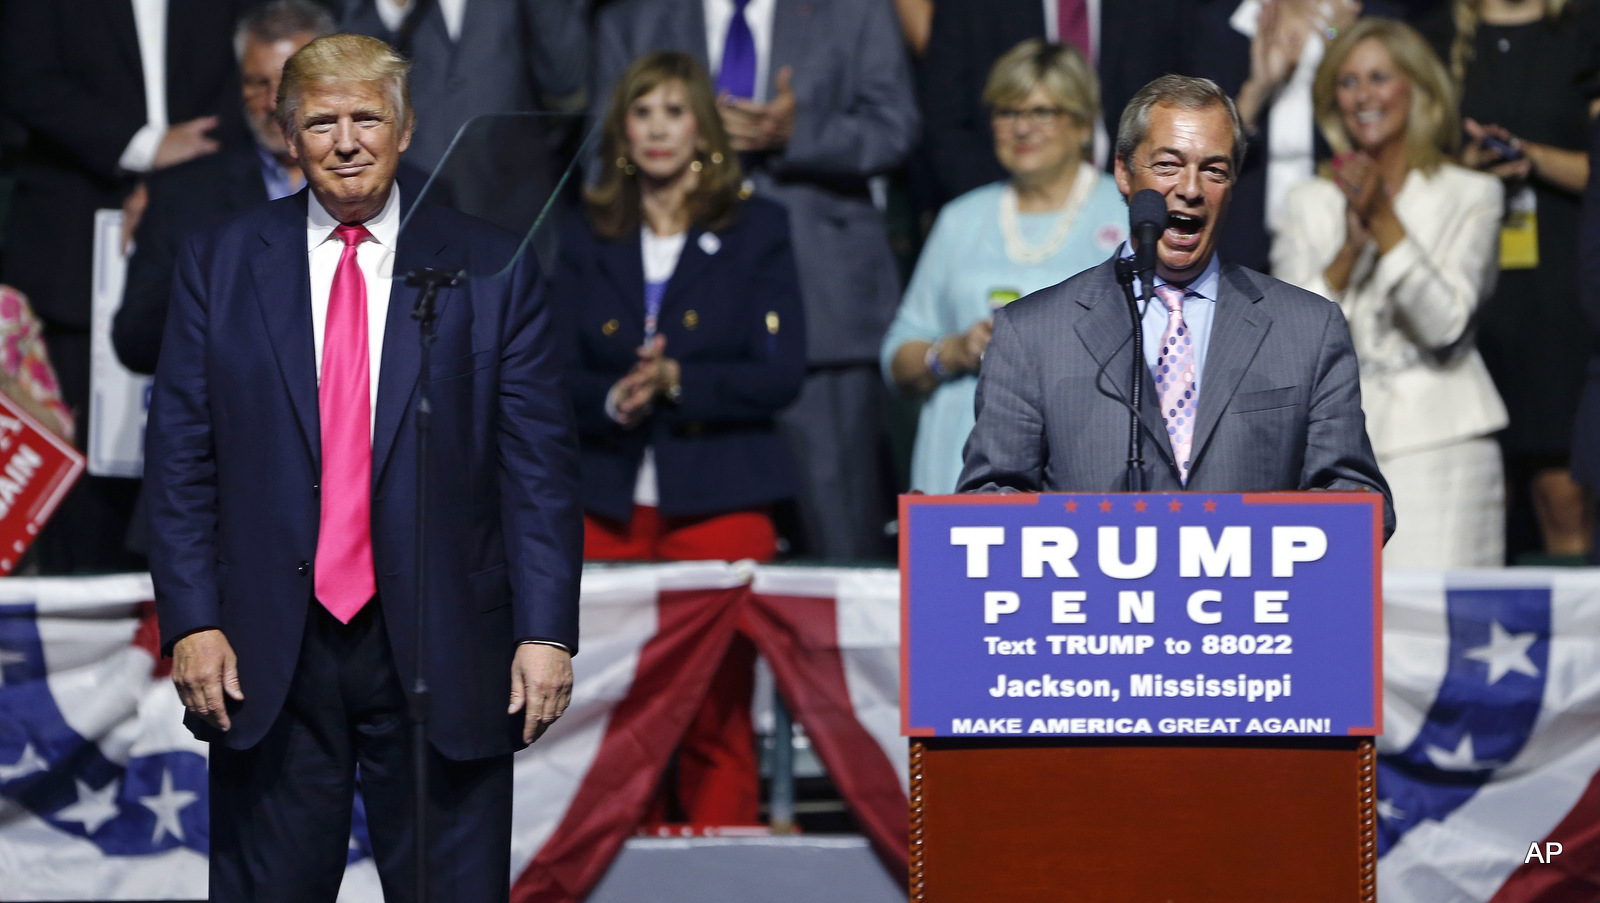 Найджел Фараж, бывший лидер британской партии UKIP, выступает в роли кандидата в президенты от республиканцев Дональда Трампа (слева), слушает предвыборный митинг Трампа в Джексоне, штат Миссисюмина, в среду, 24 августа 2016 года.